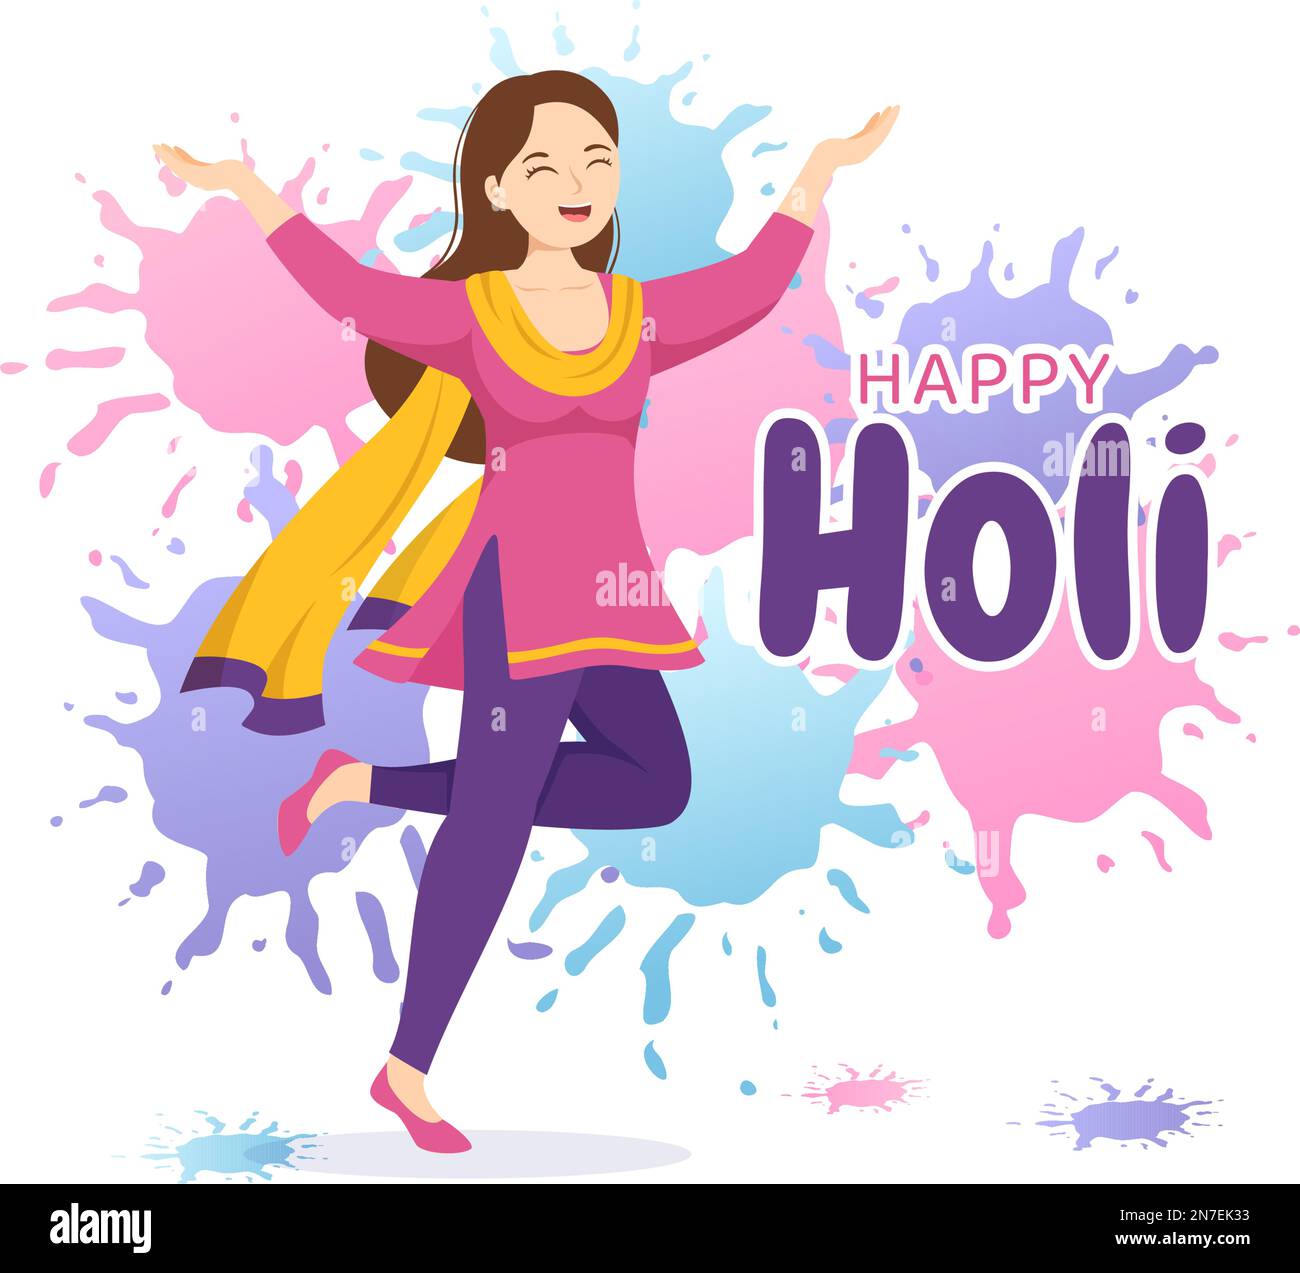 Happy Holi Festival Illustration mit farbenfrohem Töpfchen und Pulver in Hindi für Webbanner oder Landing Page in flachen, handgezeichneten Cartoon-Vorlagen Stock Vektor